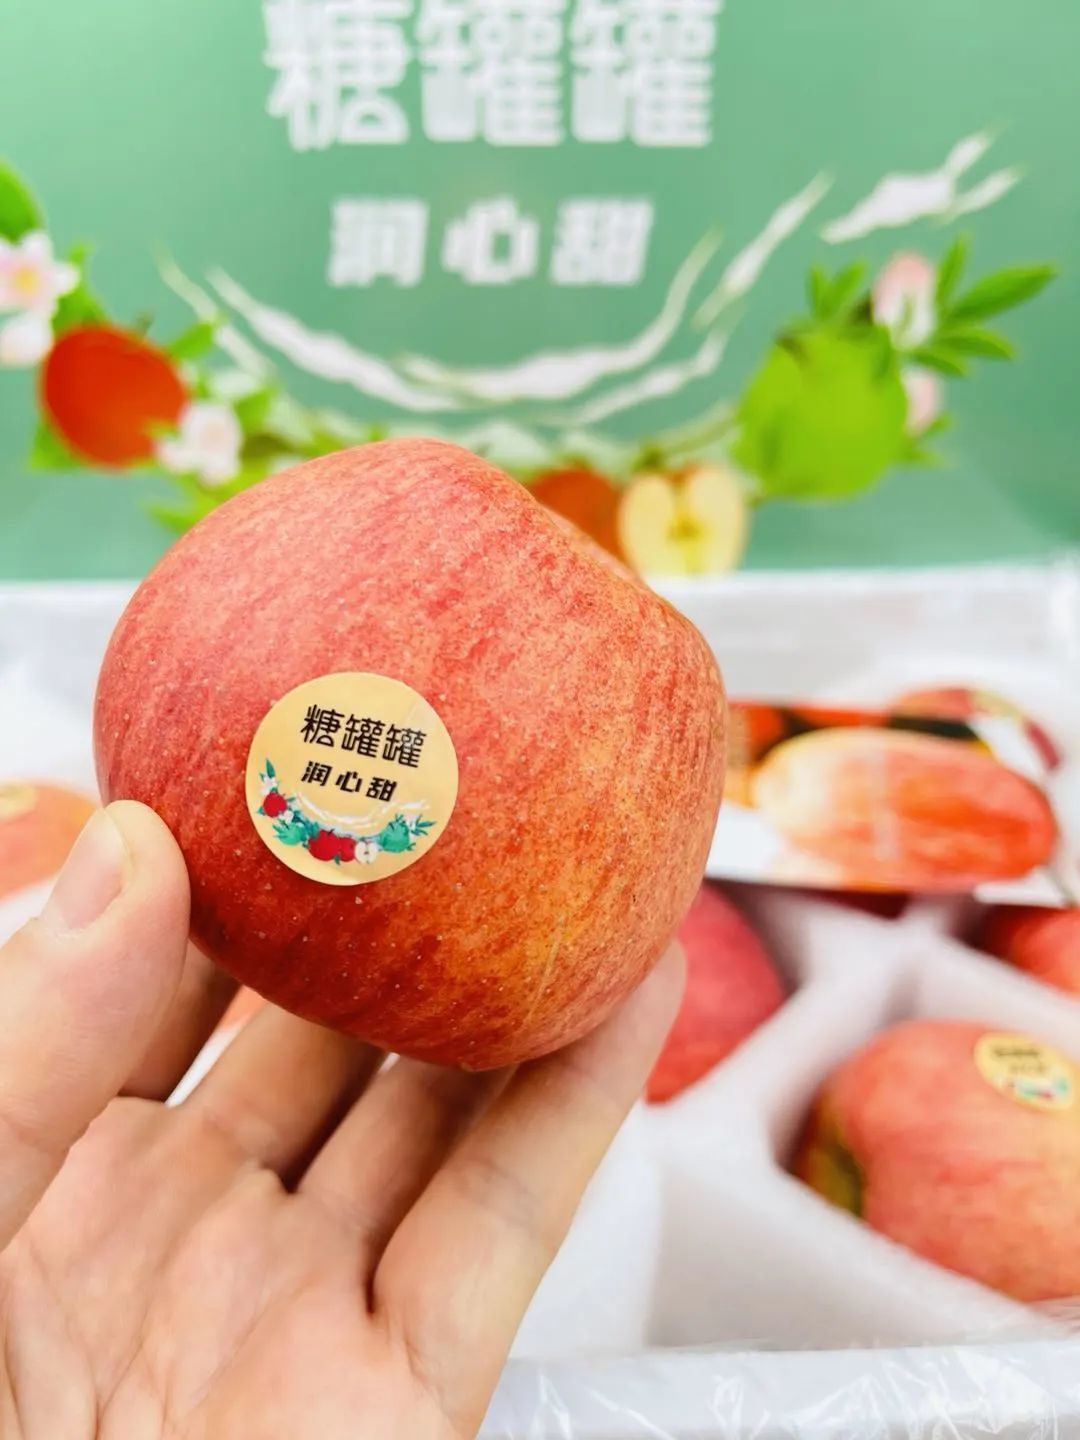 新西兰苹果大丰收 工人不足成难题 | 国际果蔬报道